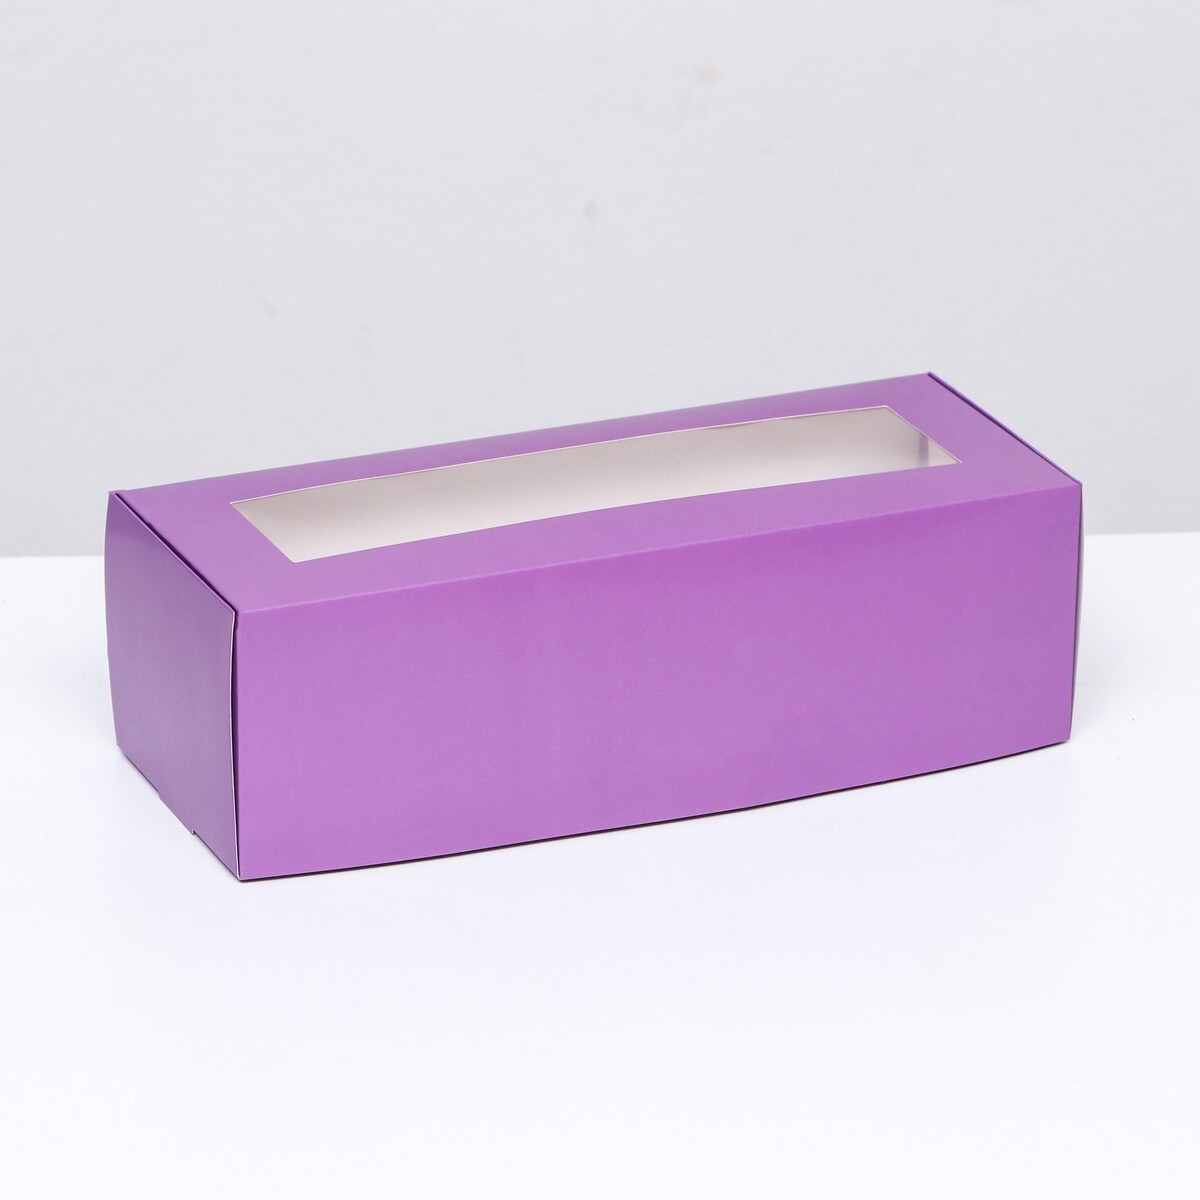 Коробка складная с окном под рулет, сиреневая, 26 х 10 х 8 см коробка самосборная с окном сиреневая 13 х 13 х 3 см